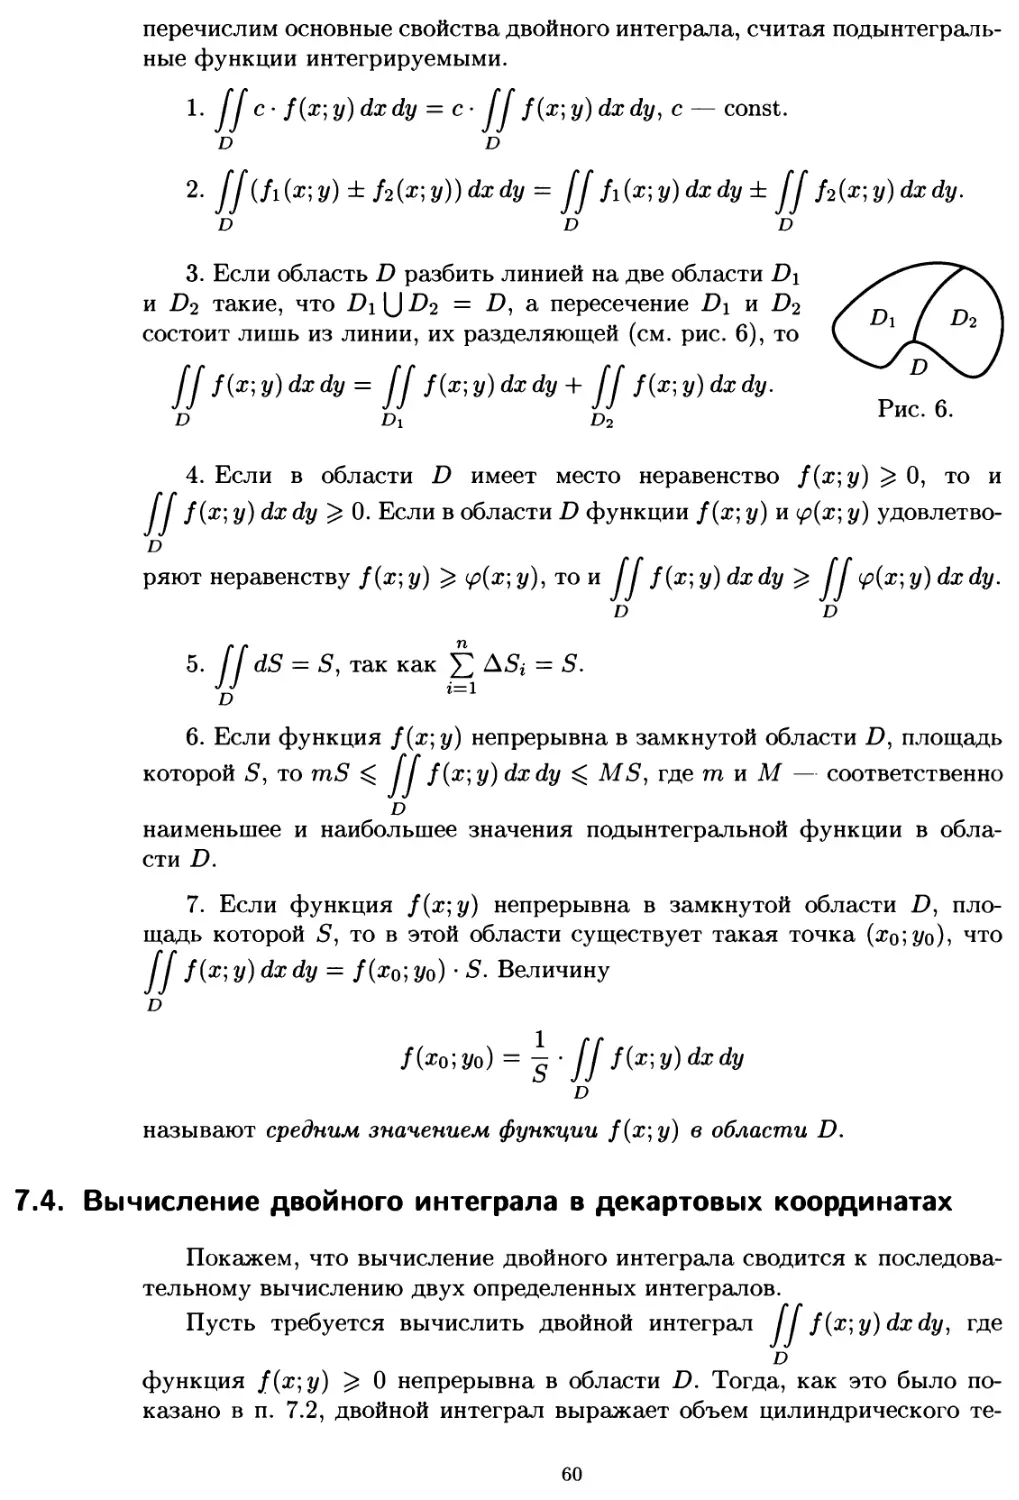 7.4. Вычисление двойного интеграла в декартовых координатах